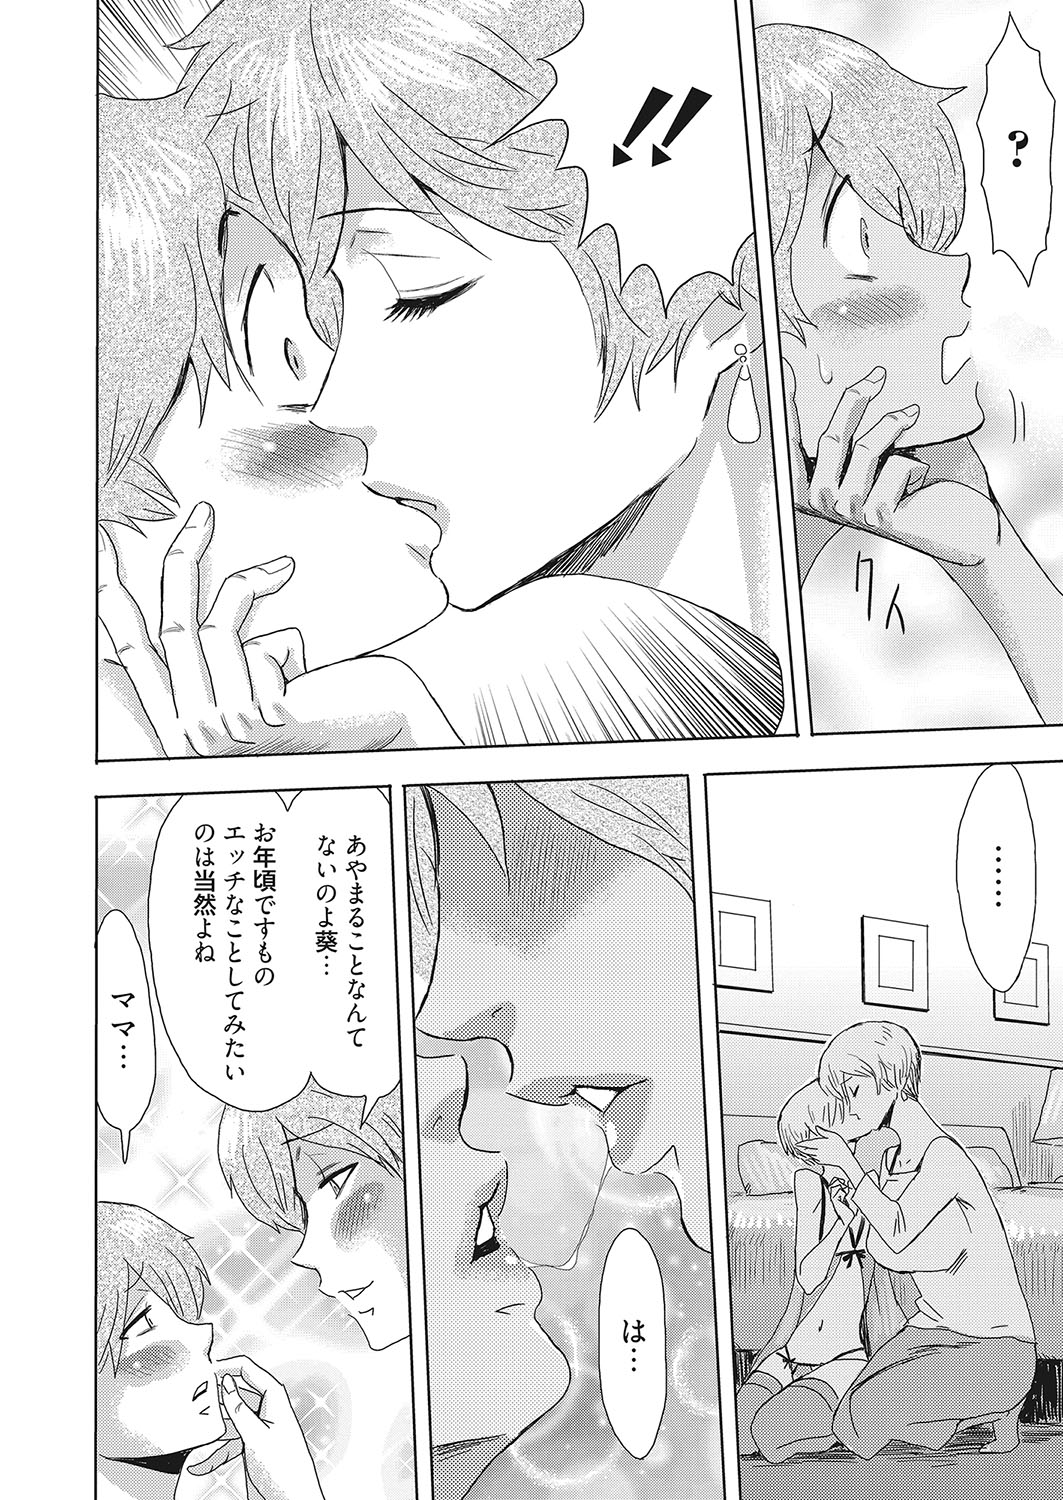 web 漫画ばんがいち Vol.25